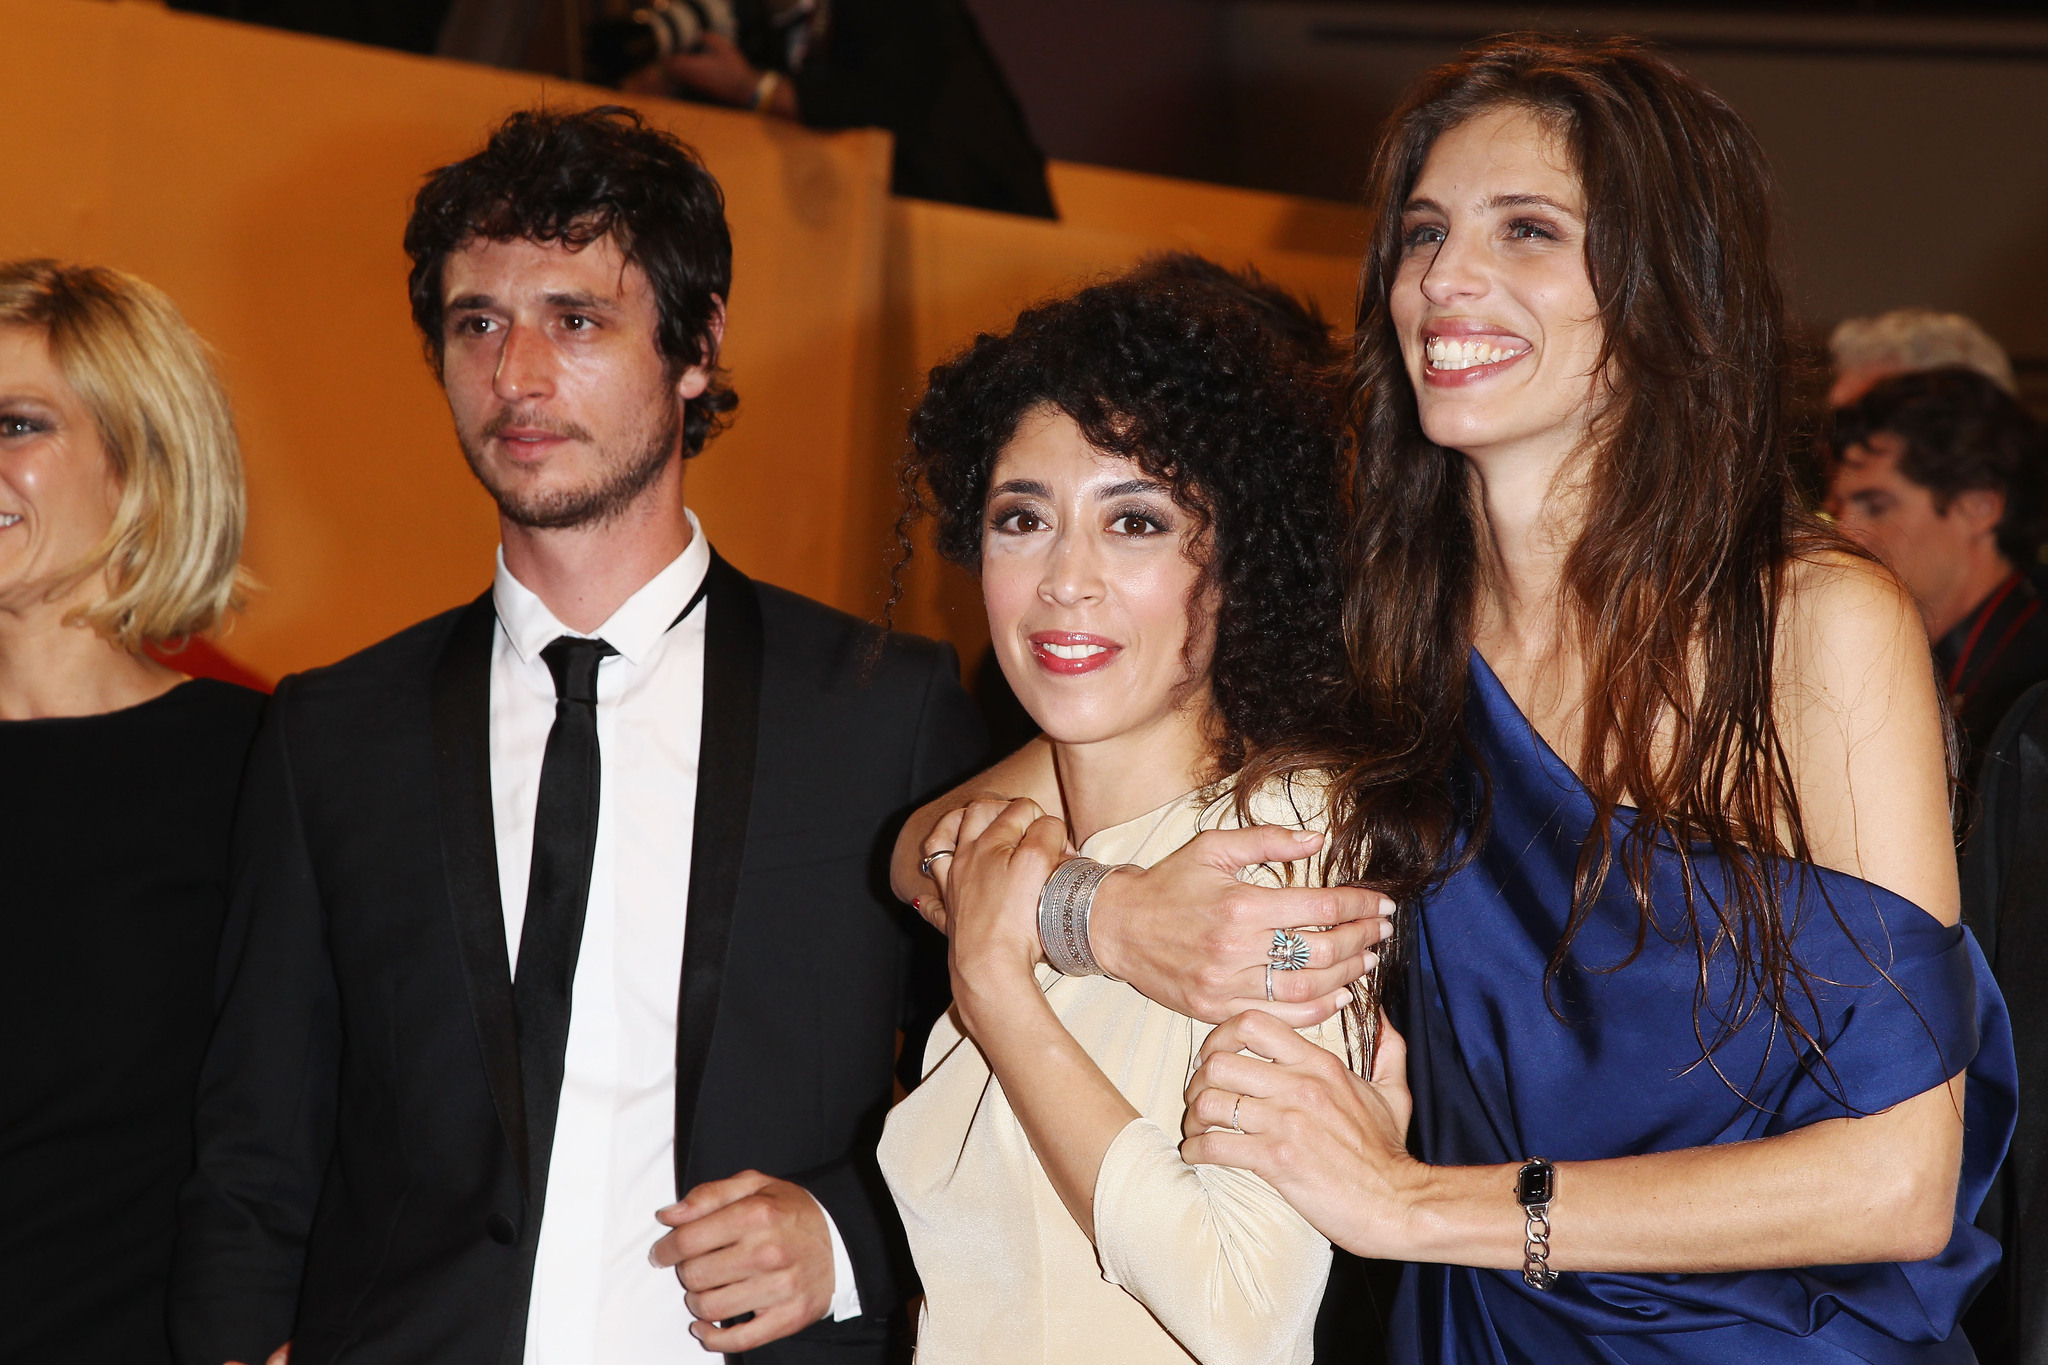 Jérémie Elkaïm, Maïwenn and Naidra Ayadi at event of Polisse (2011)